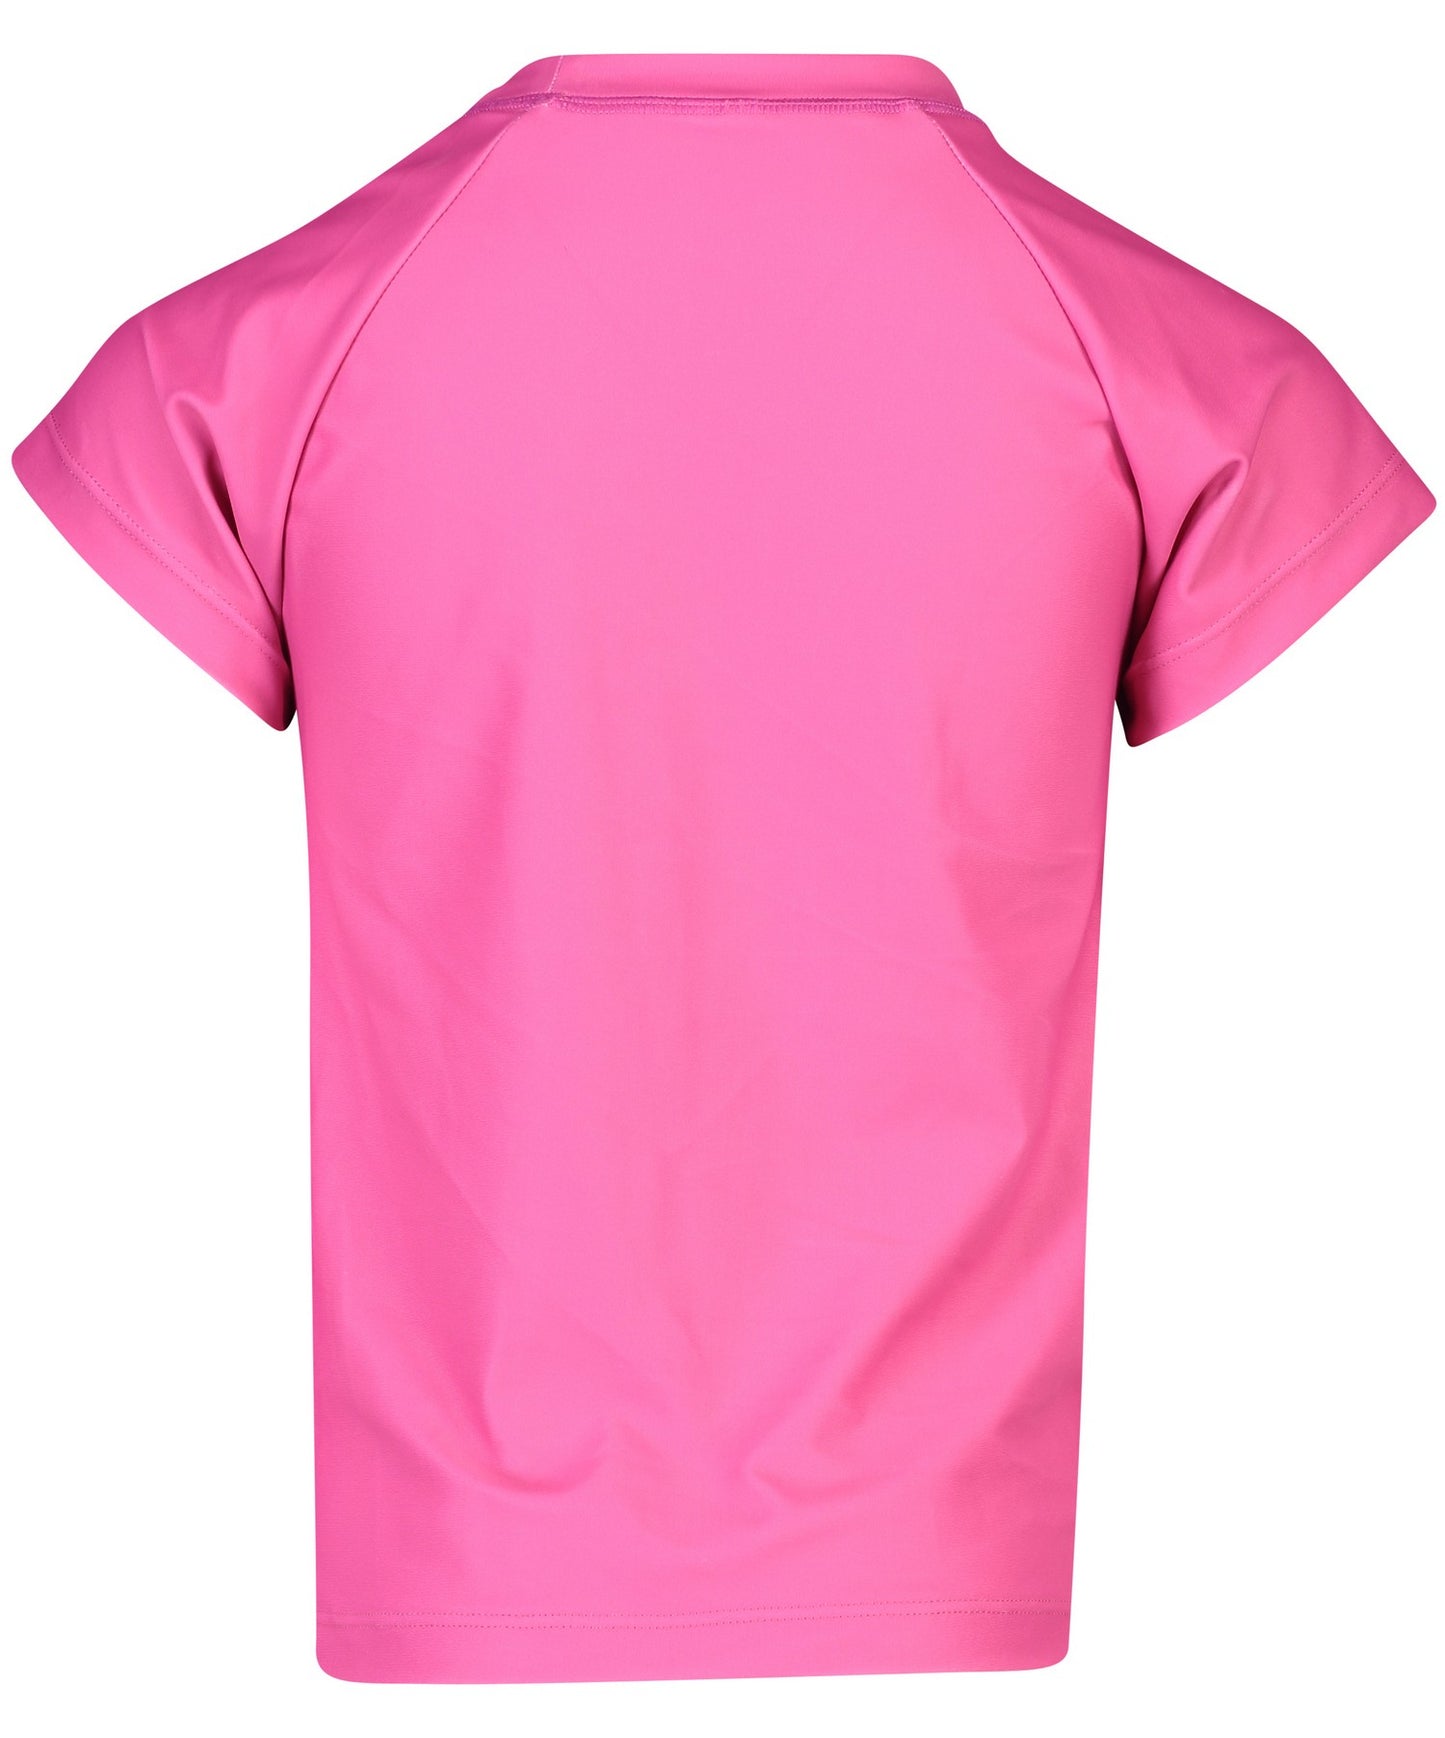 Snapper Rock - UV Zwemshirt voor meisjes - Rash top - Fuchsia